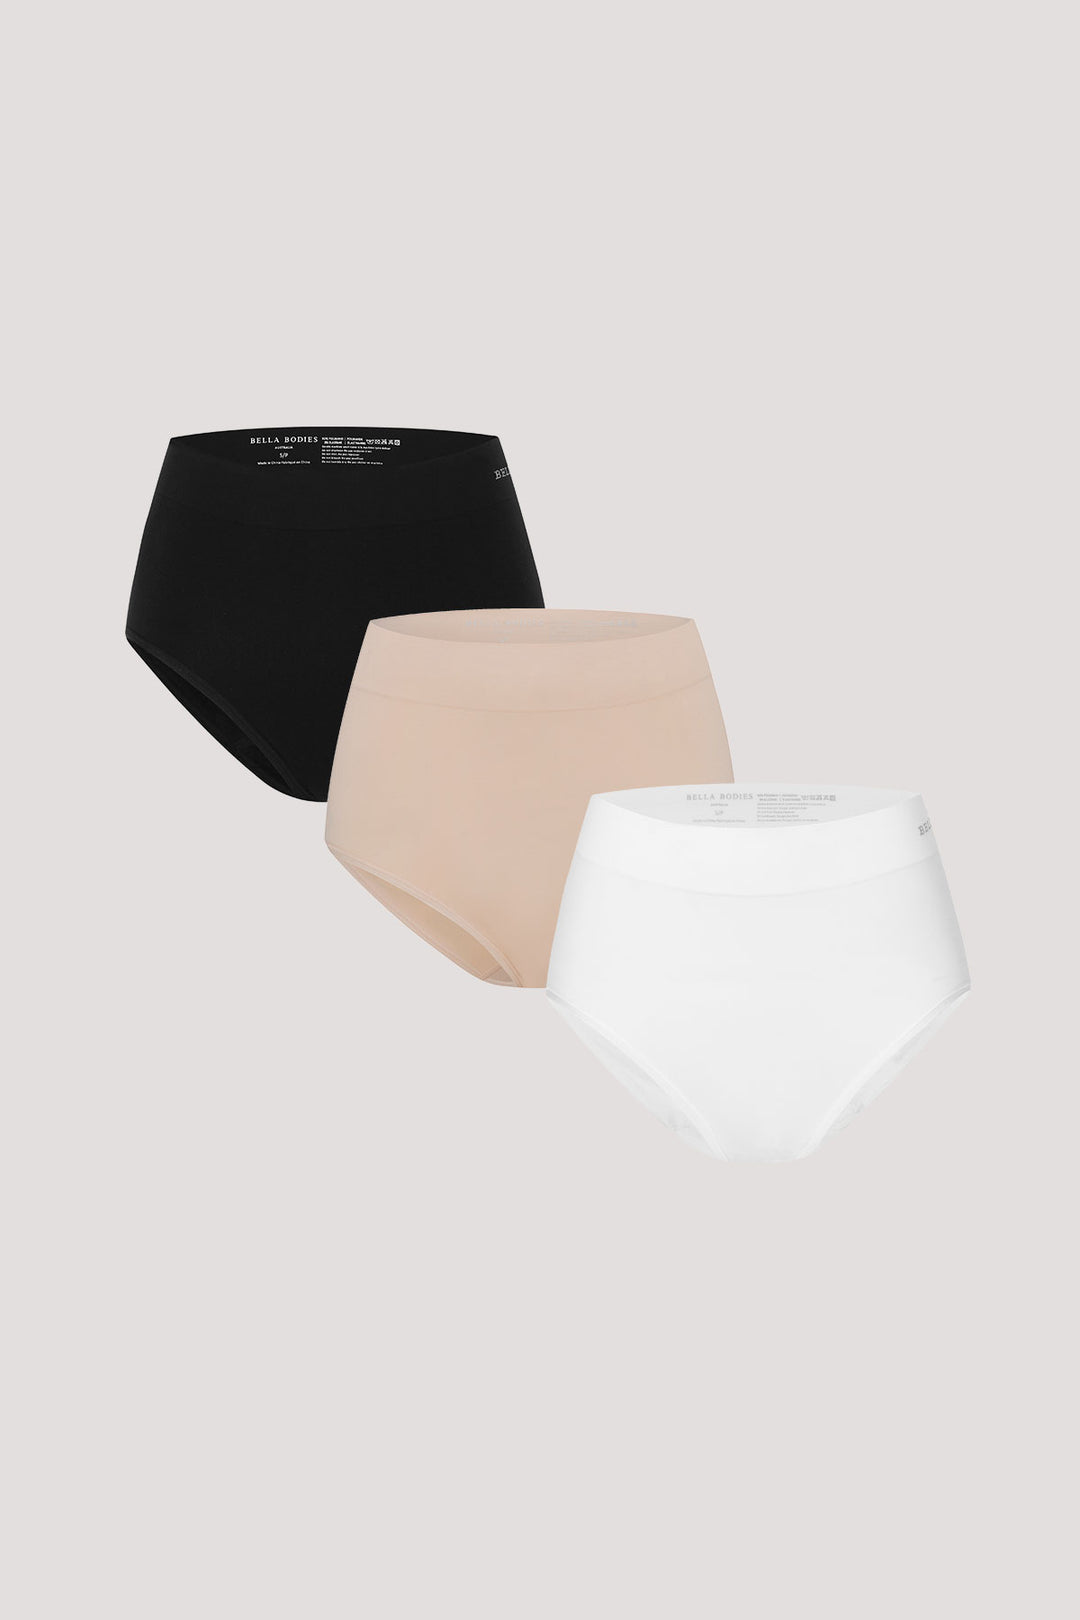 Women's High Waist Underwear 3 pack I Bella Bodies Australia | Black, White and Sand